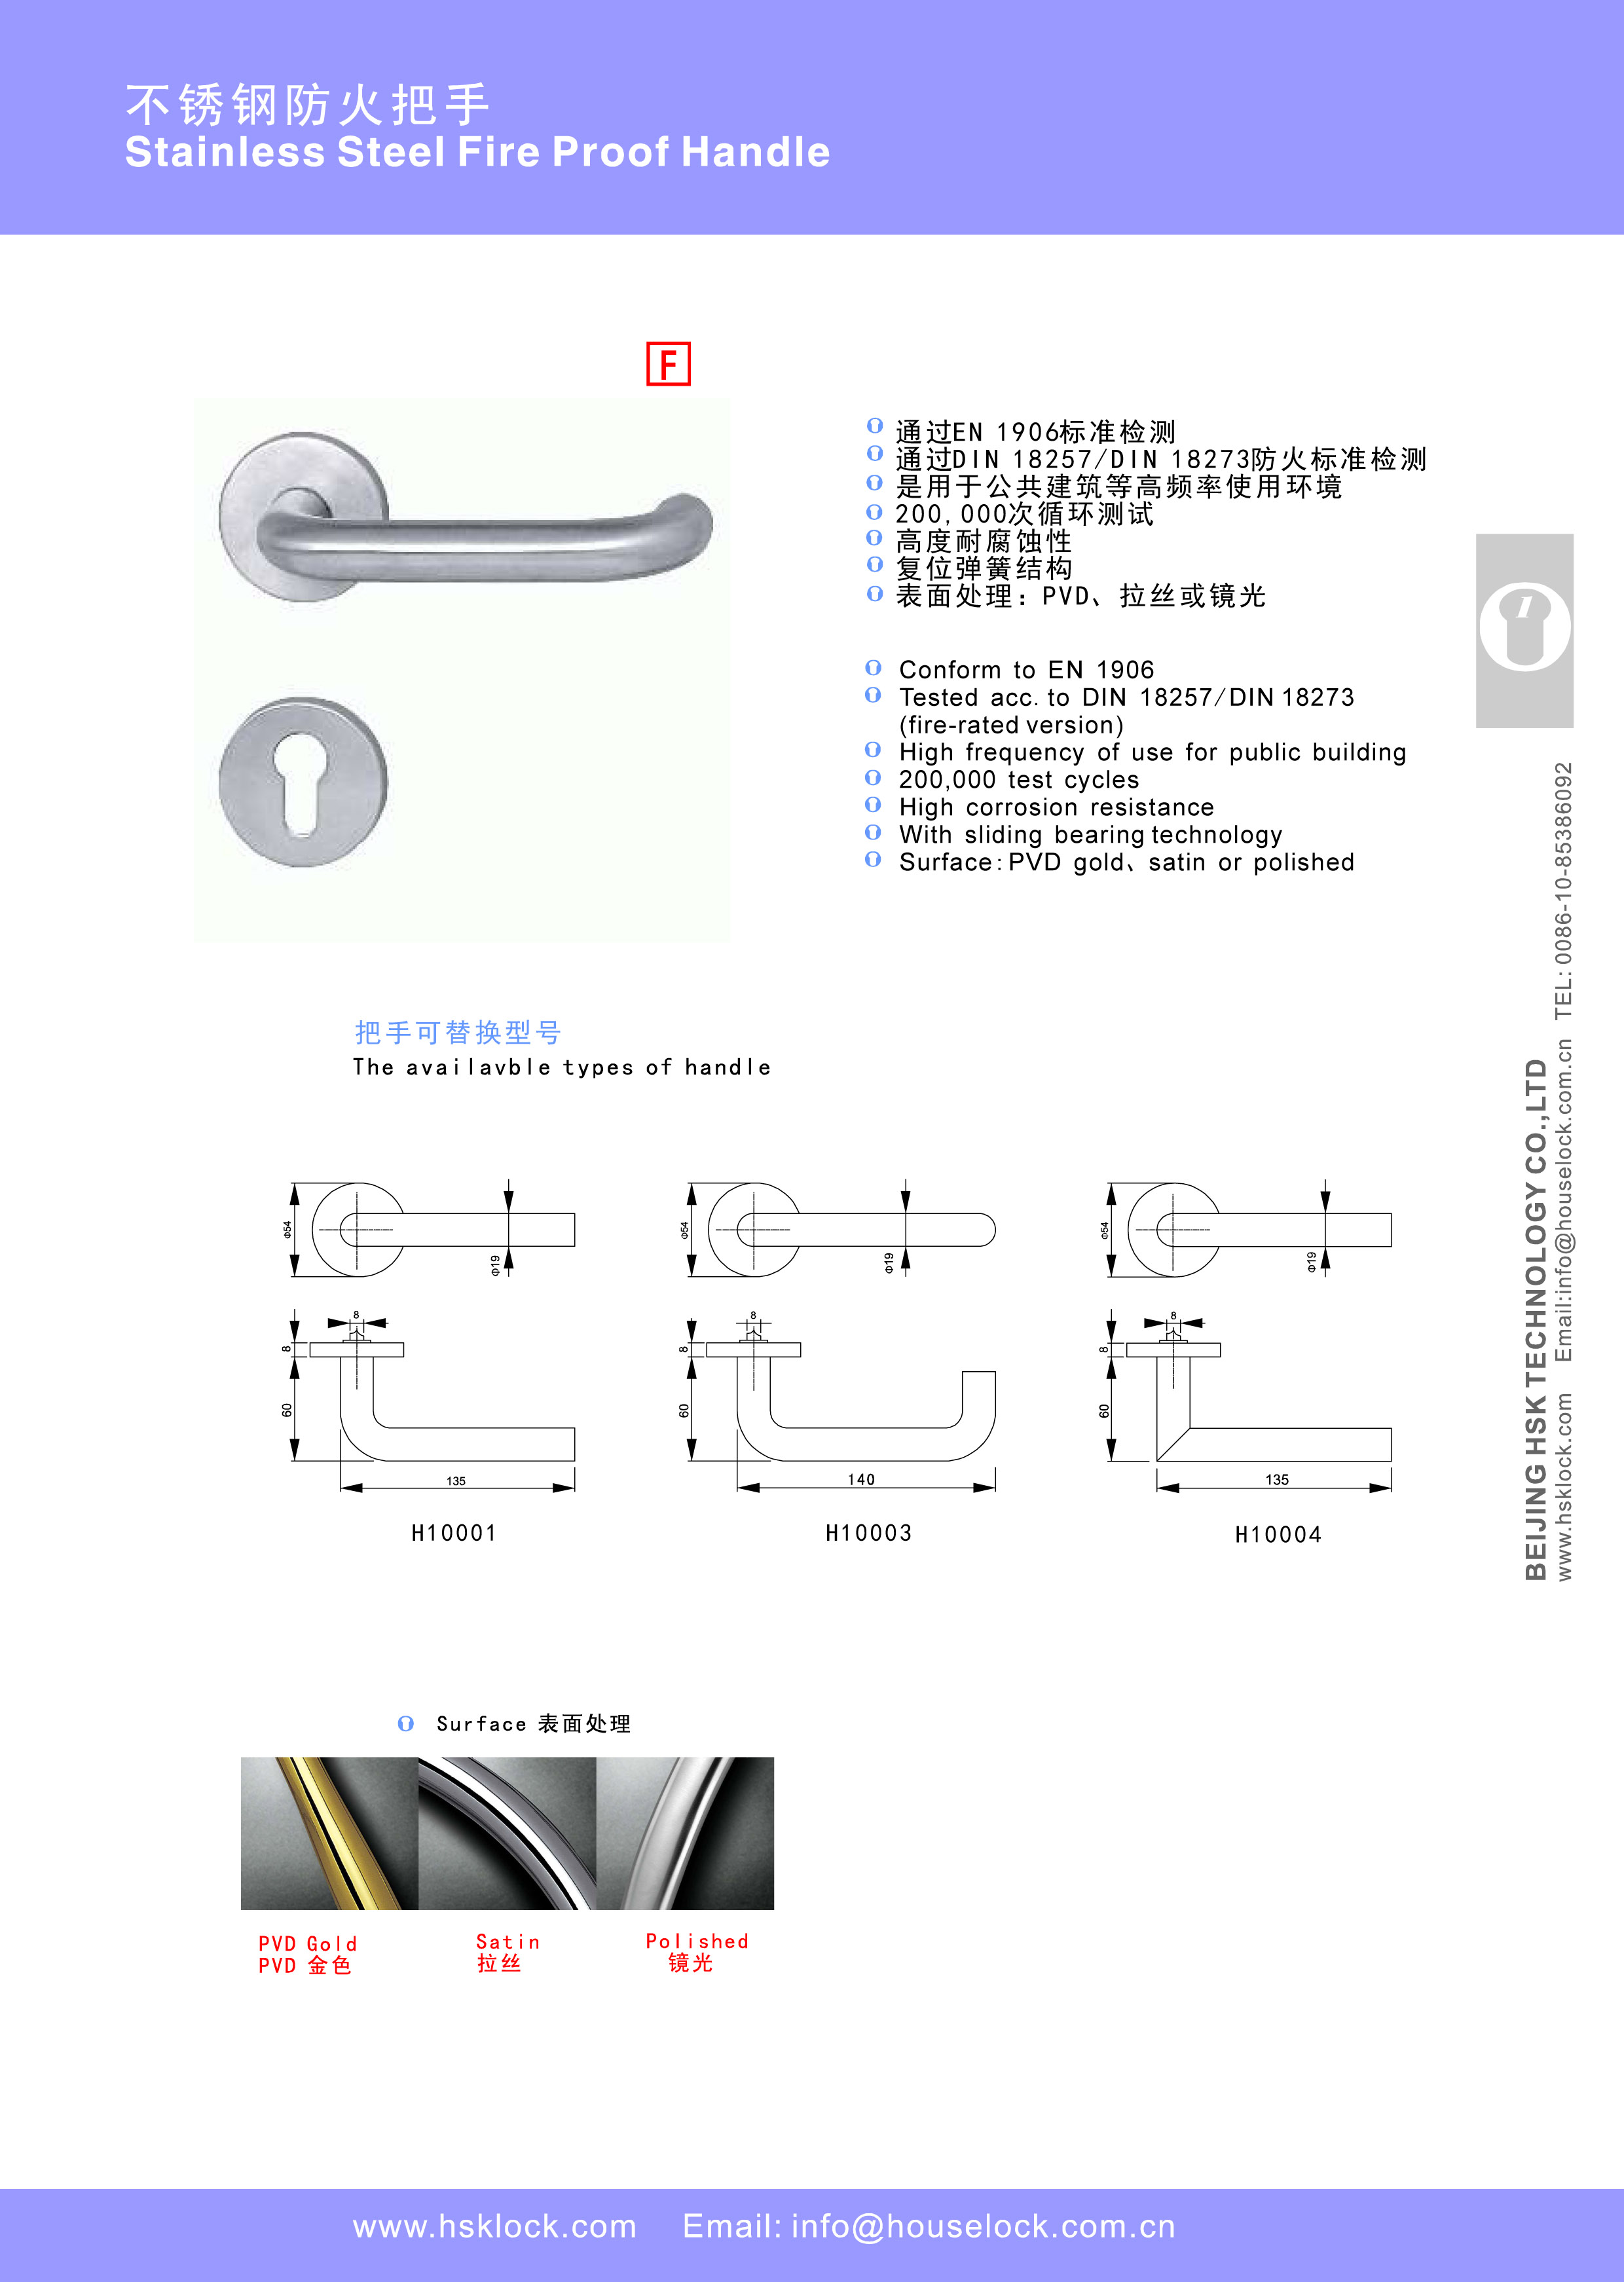 HSK-H10003 -1-4Stainless Steel Handle-1.jpg